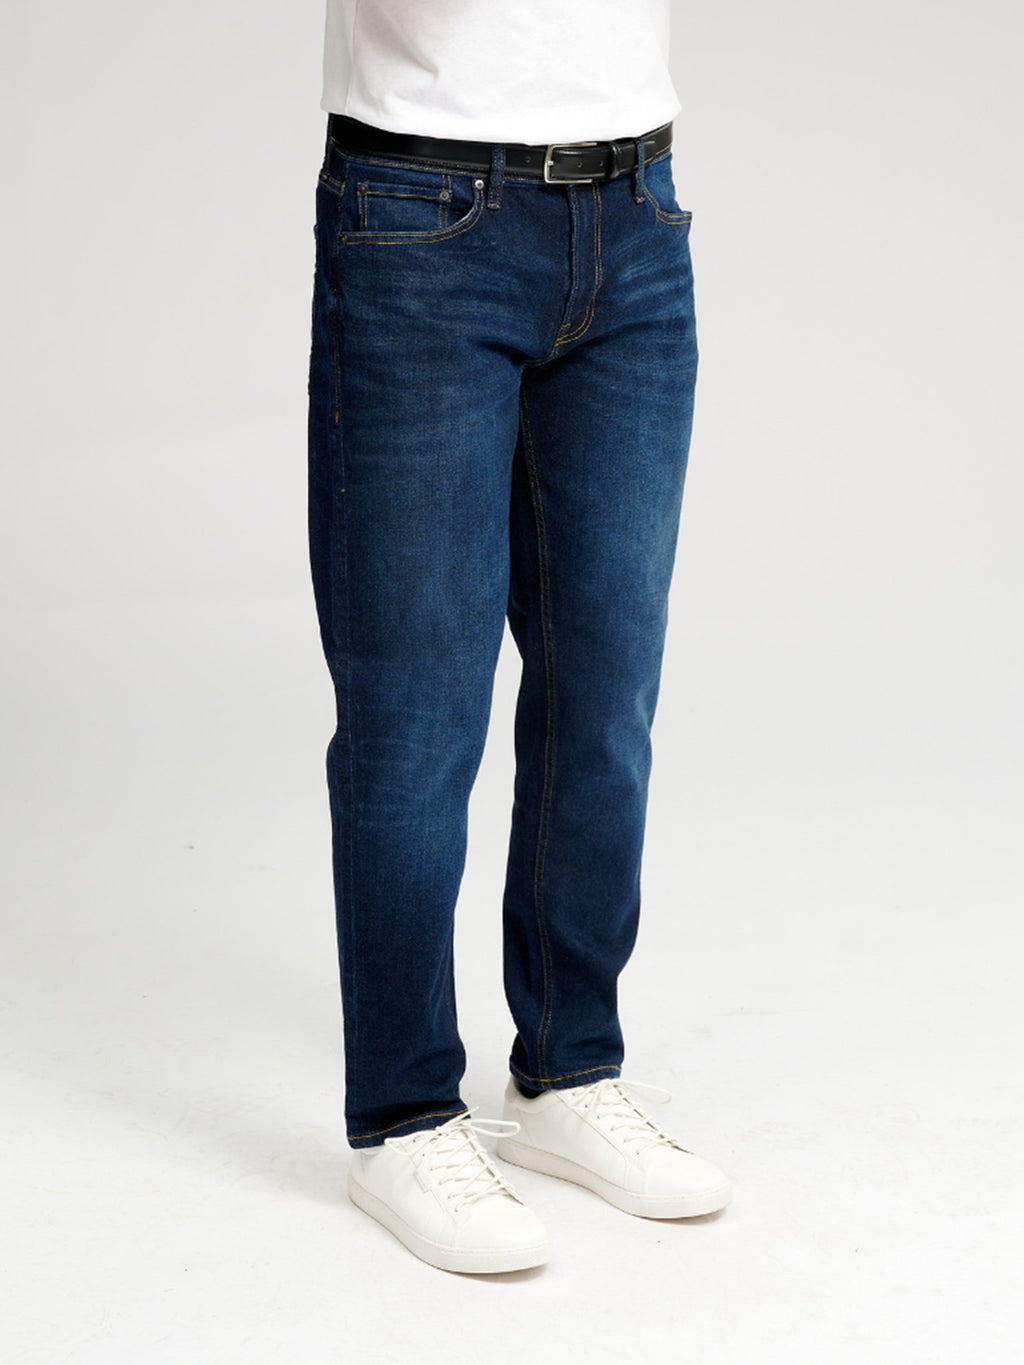 Les jeans de performance originaux (réguliers) - Donim bleu foncé